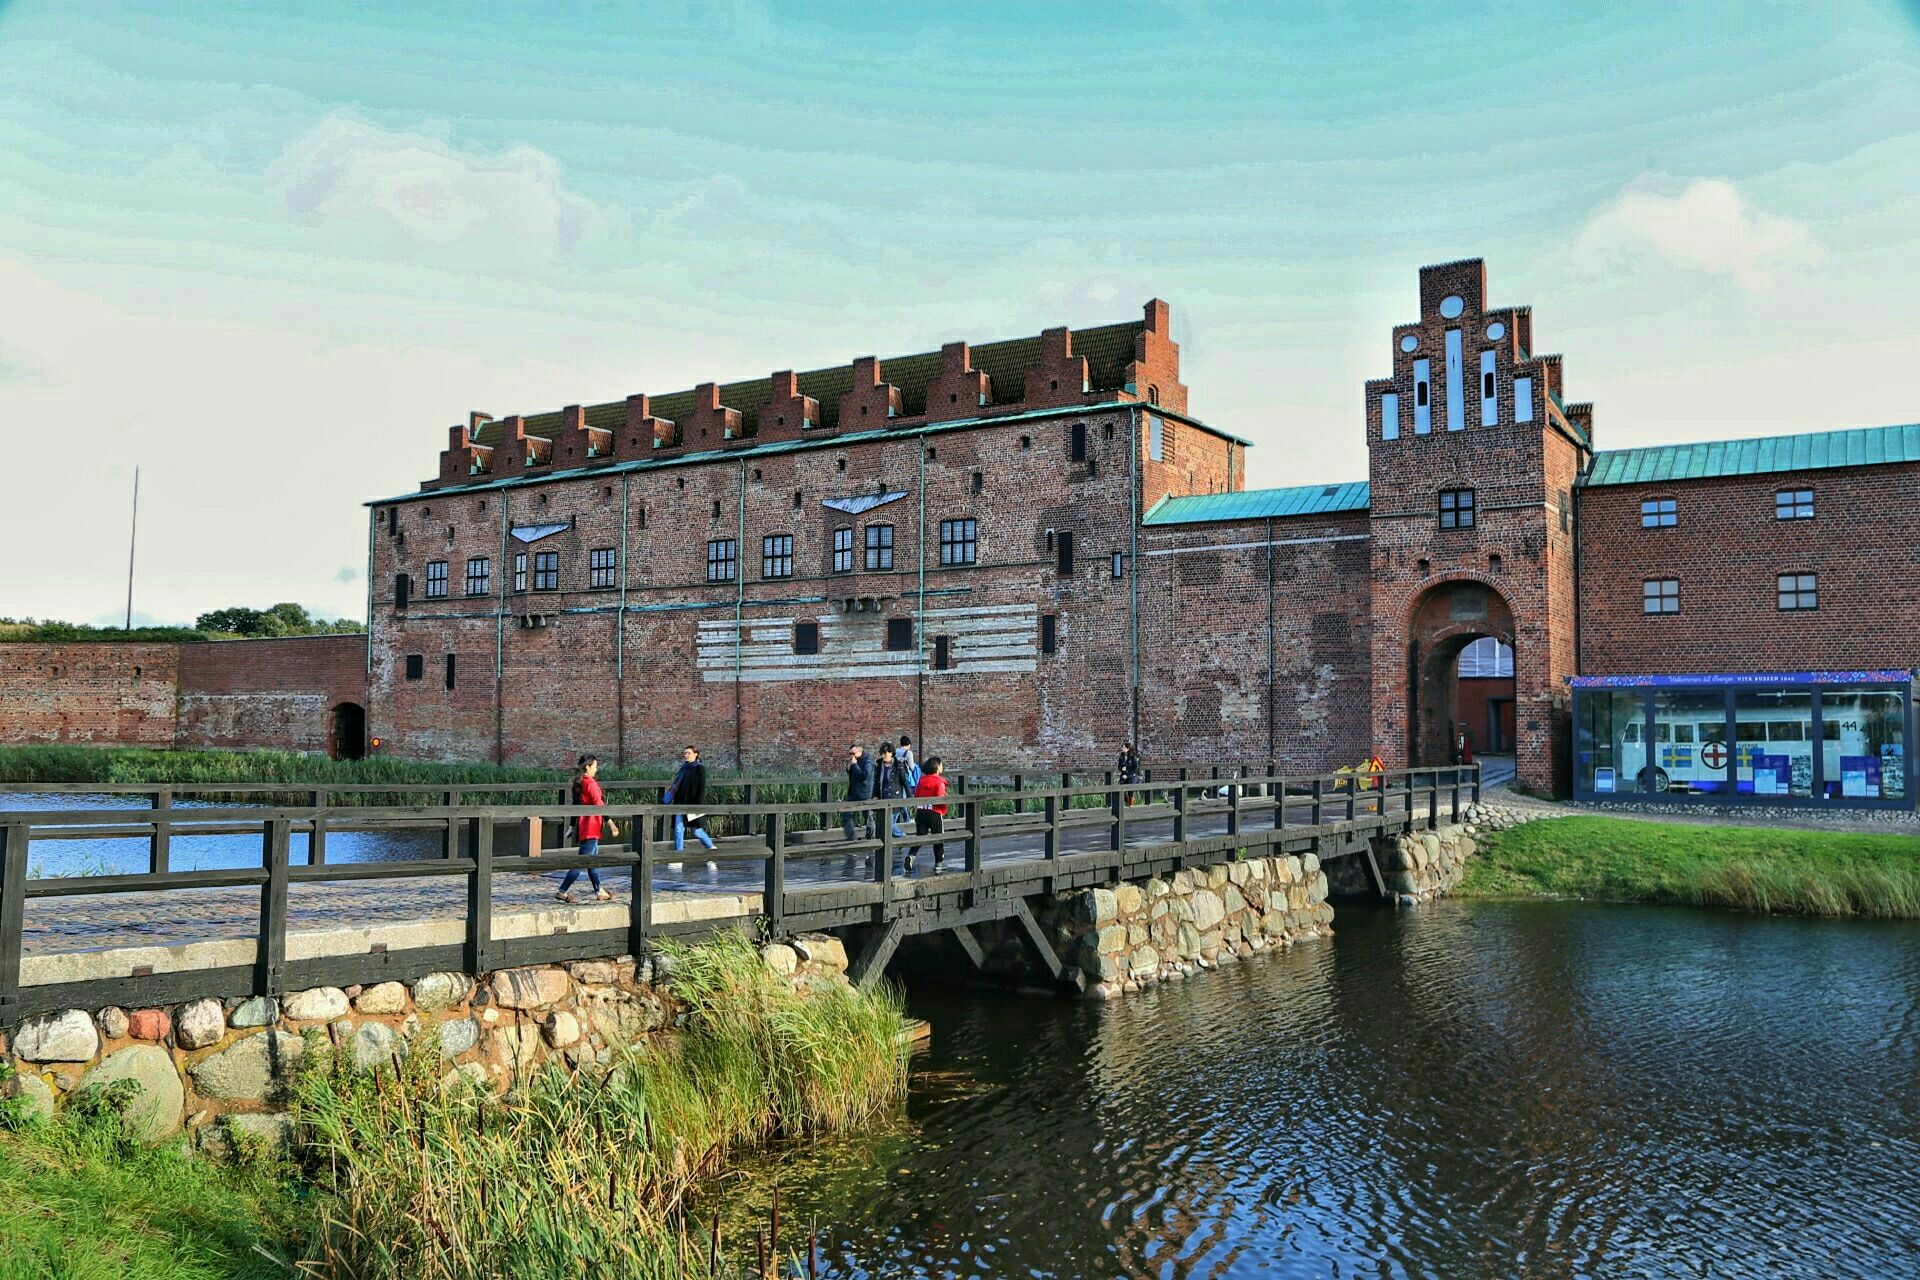 马尔莫胡斯是一座欧洲古城,这里的马尔默胡斯城堡已经有800多年的历史